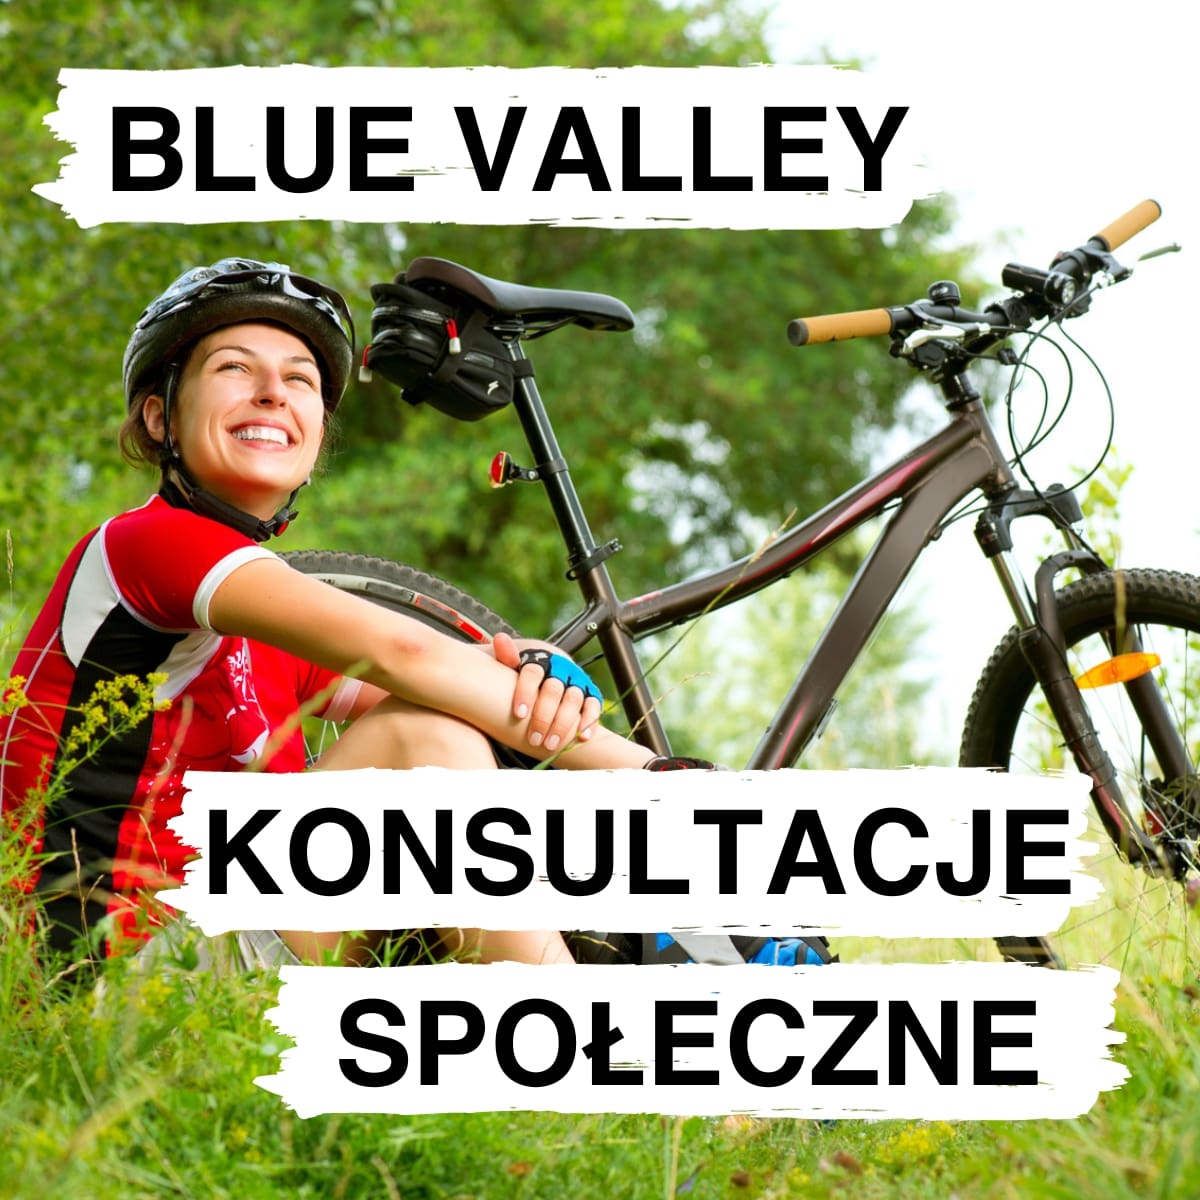 Konsultacje społeczne w sprawie projektu Blue Valley - Wiślanym Szlakiem